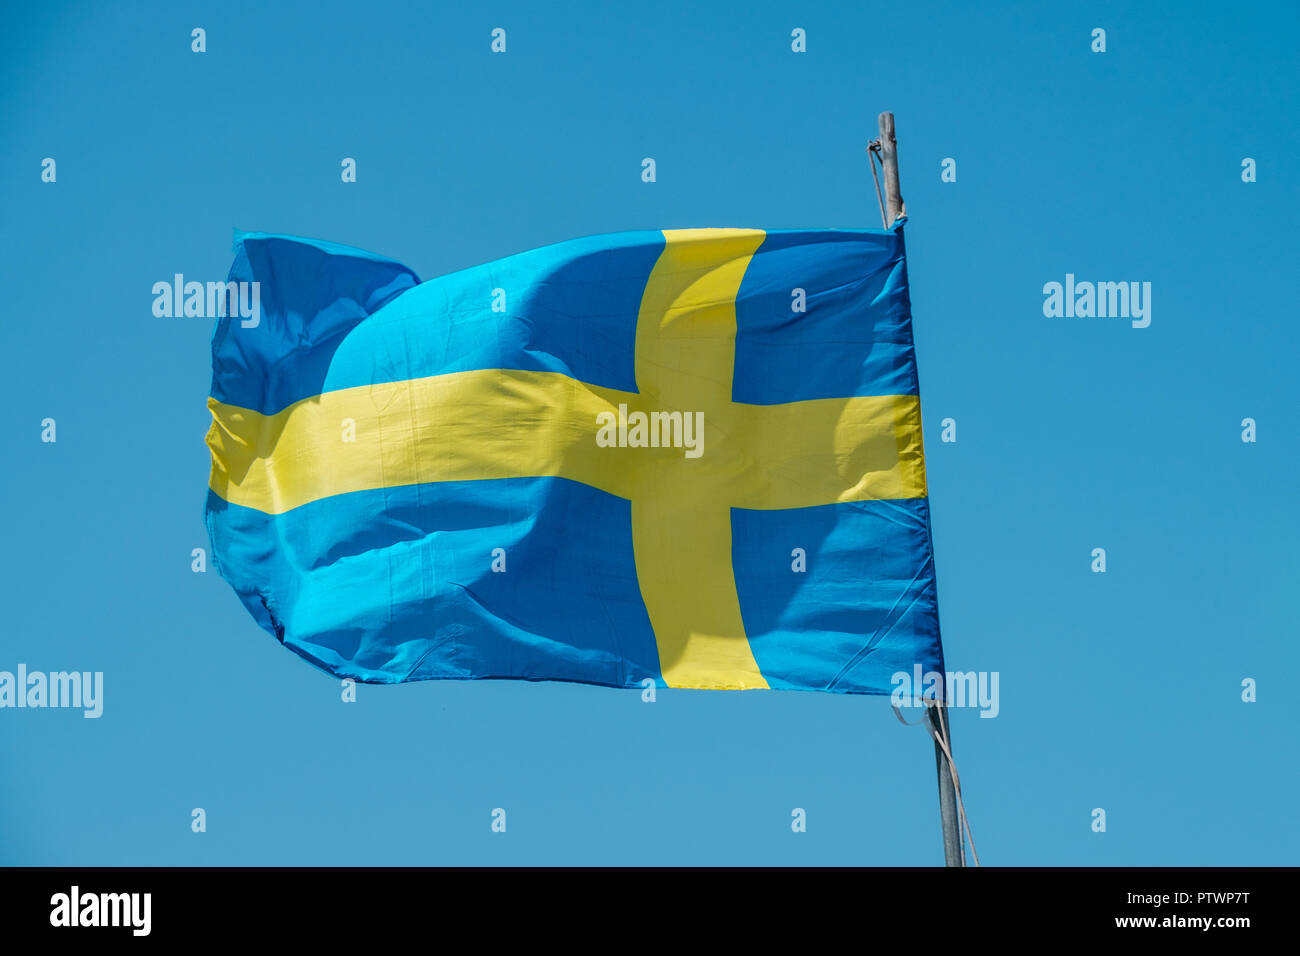 Brandir le drapeau suédois sur ciel bleu - drapeau national de Suède Banque D'Images